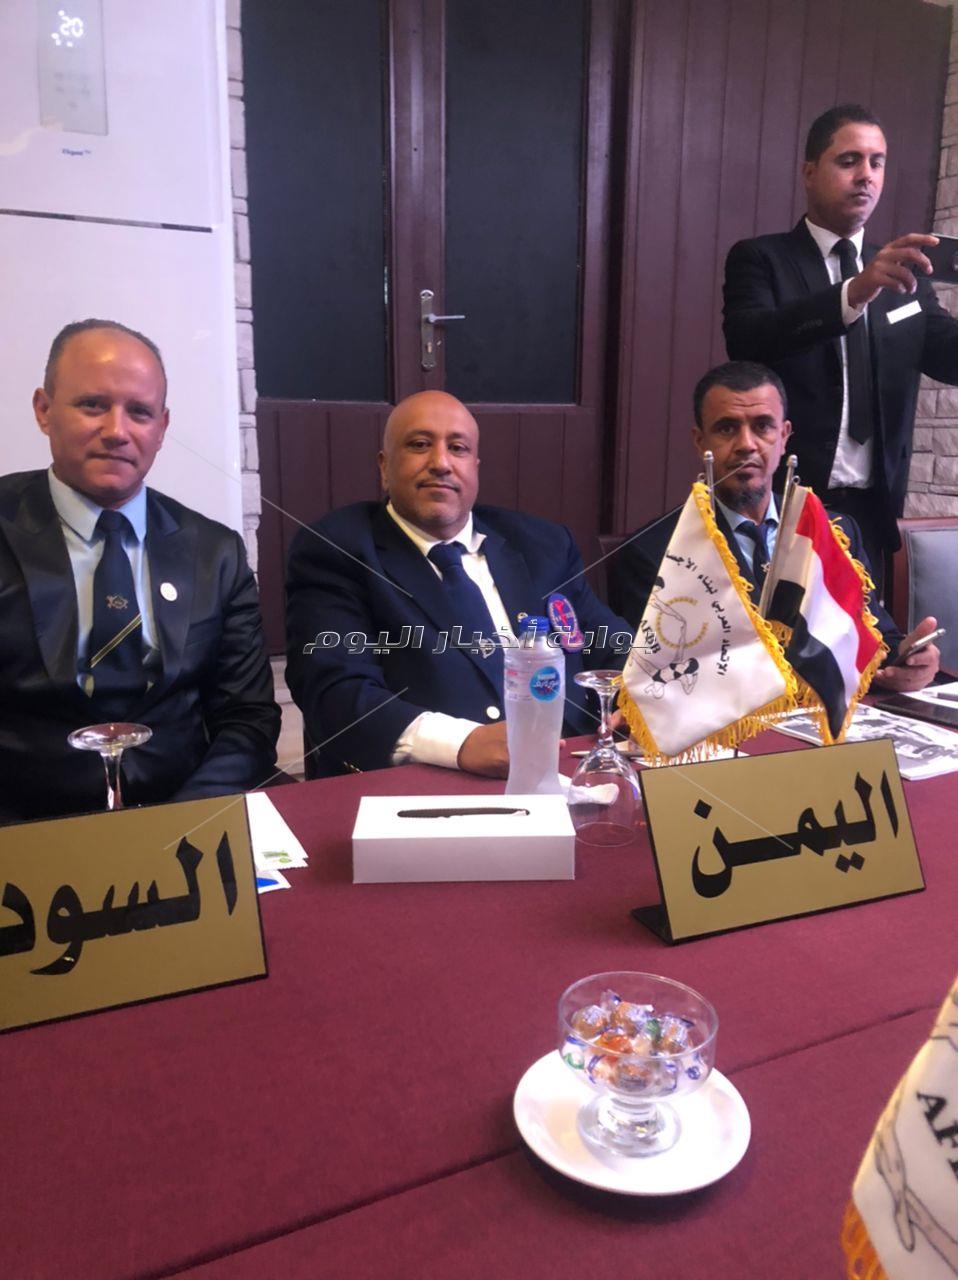 رئيس الإتحاد اليمني لكمال الأجسام يشيد بالبطولة العربية والتنظيم